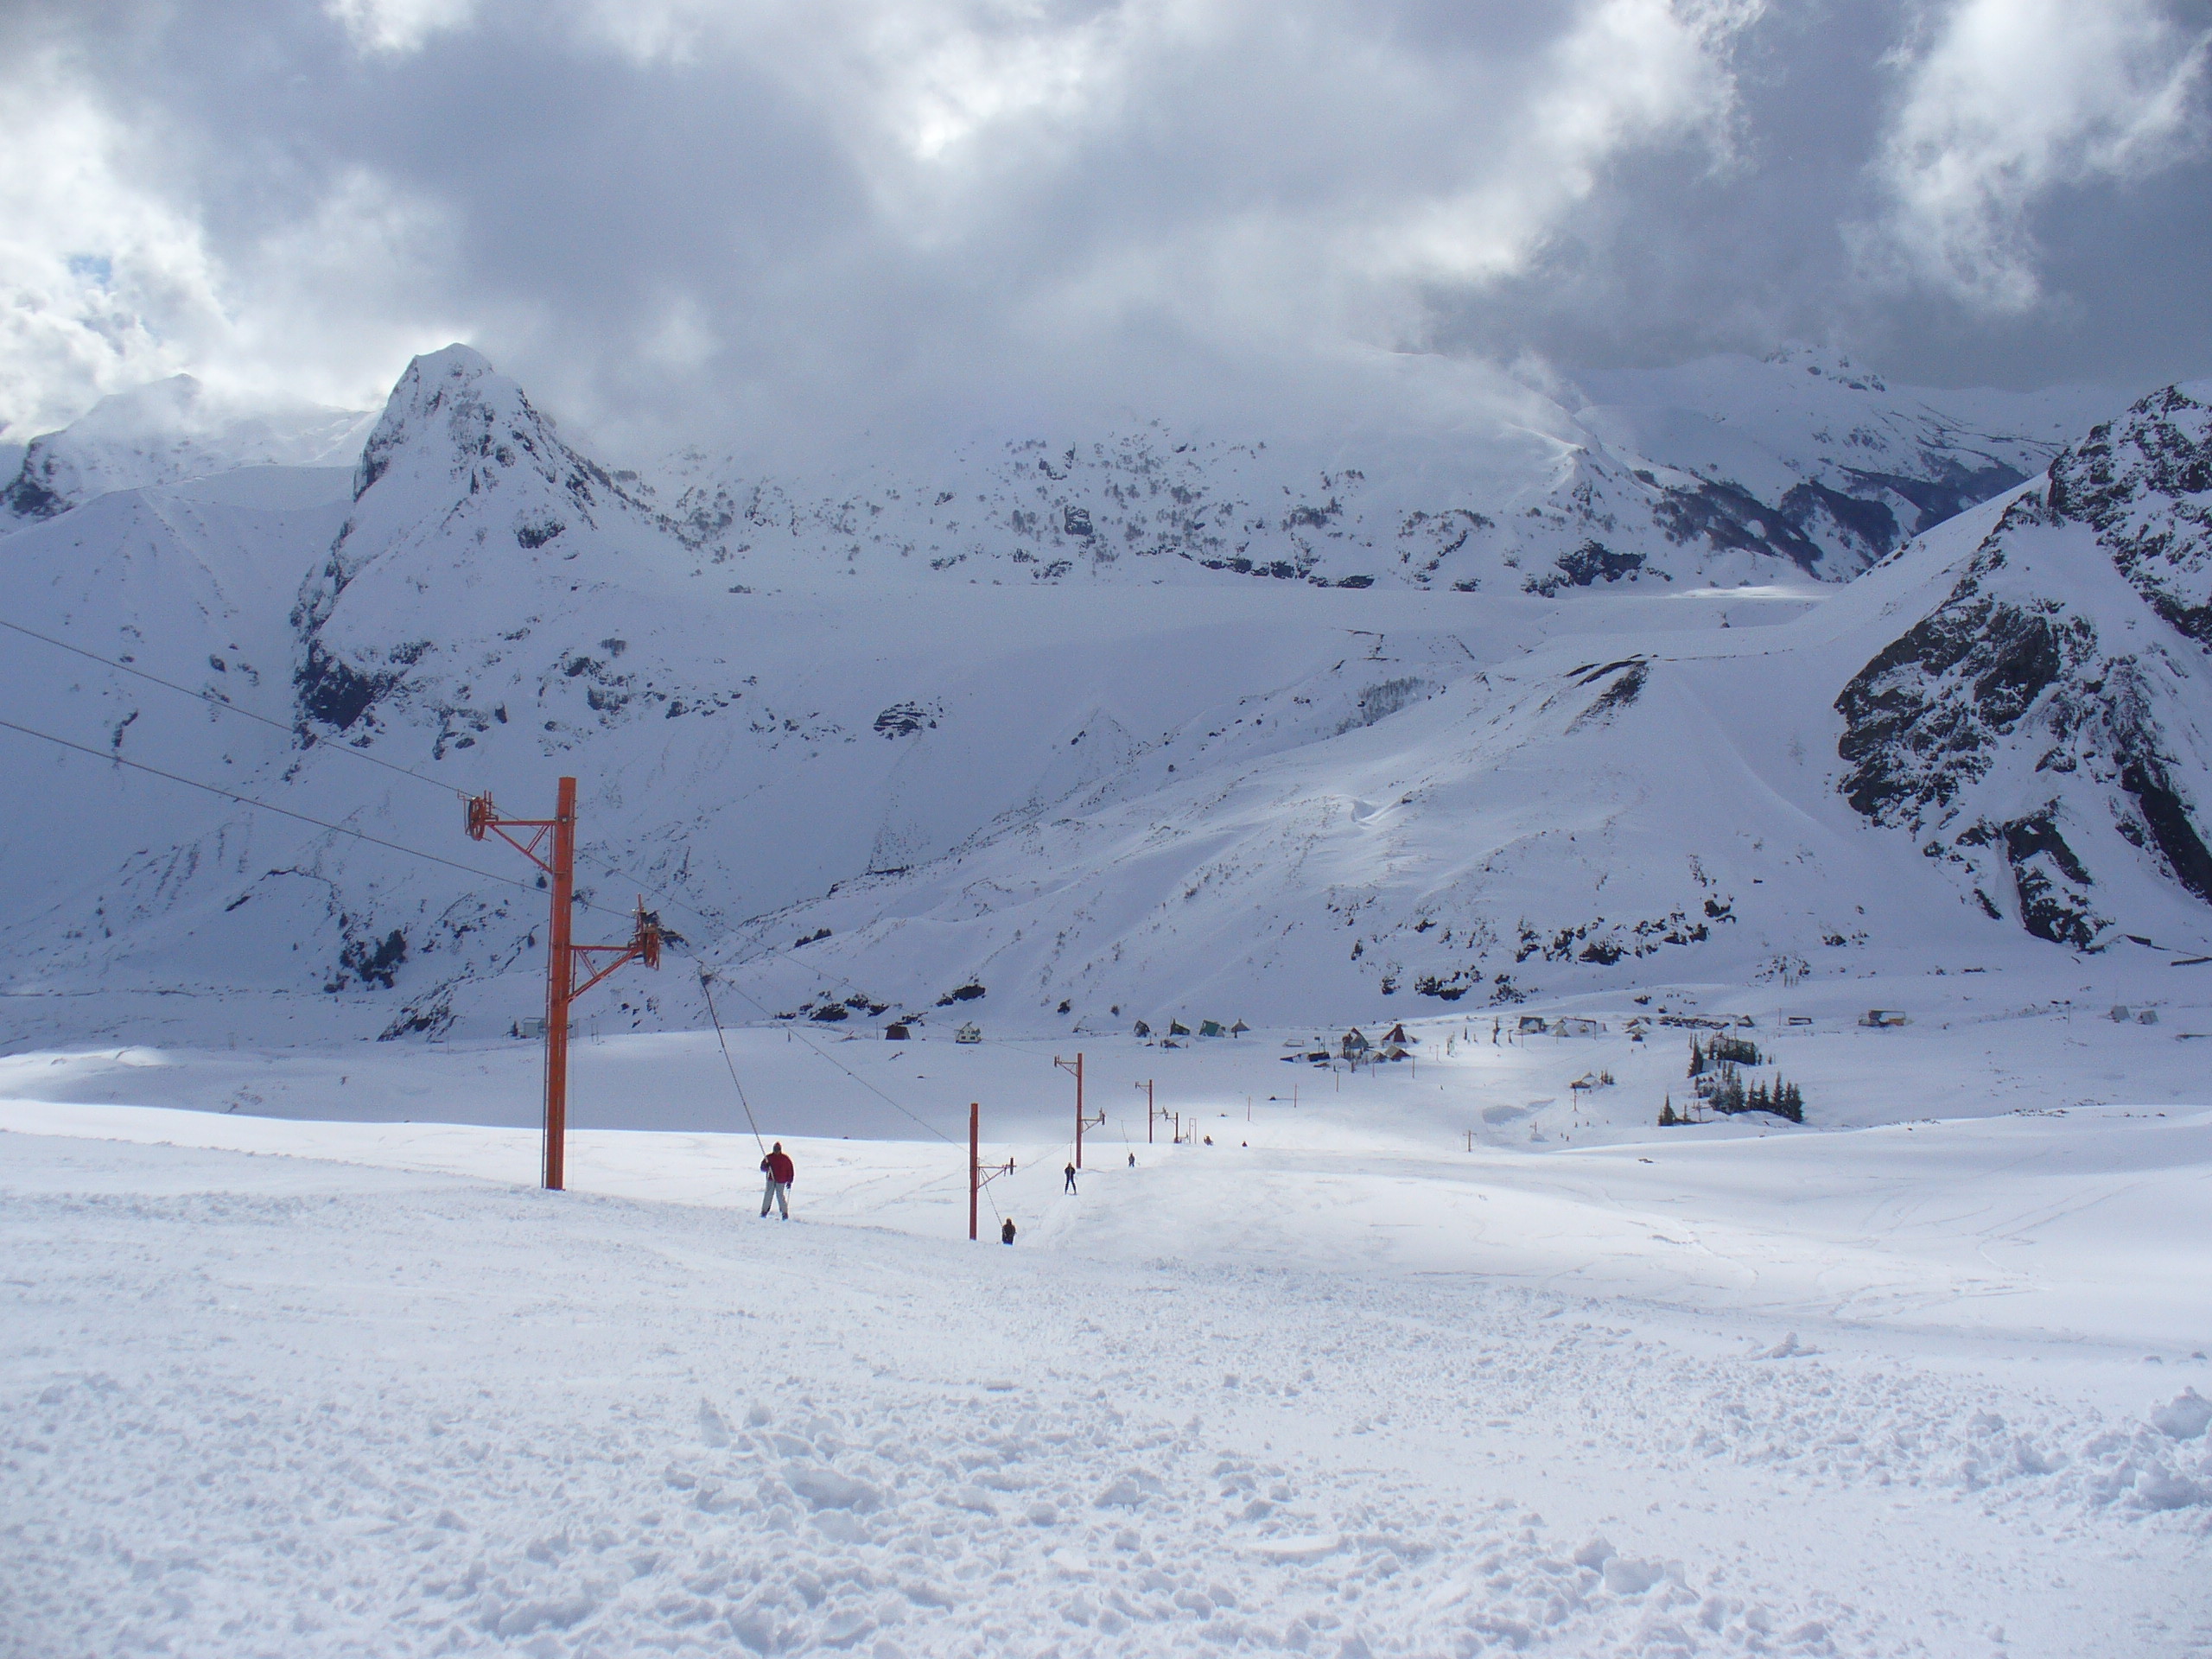 Centro de Ski Antuco